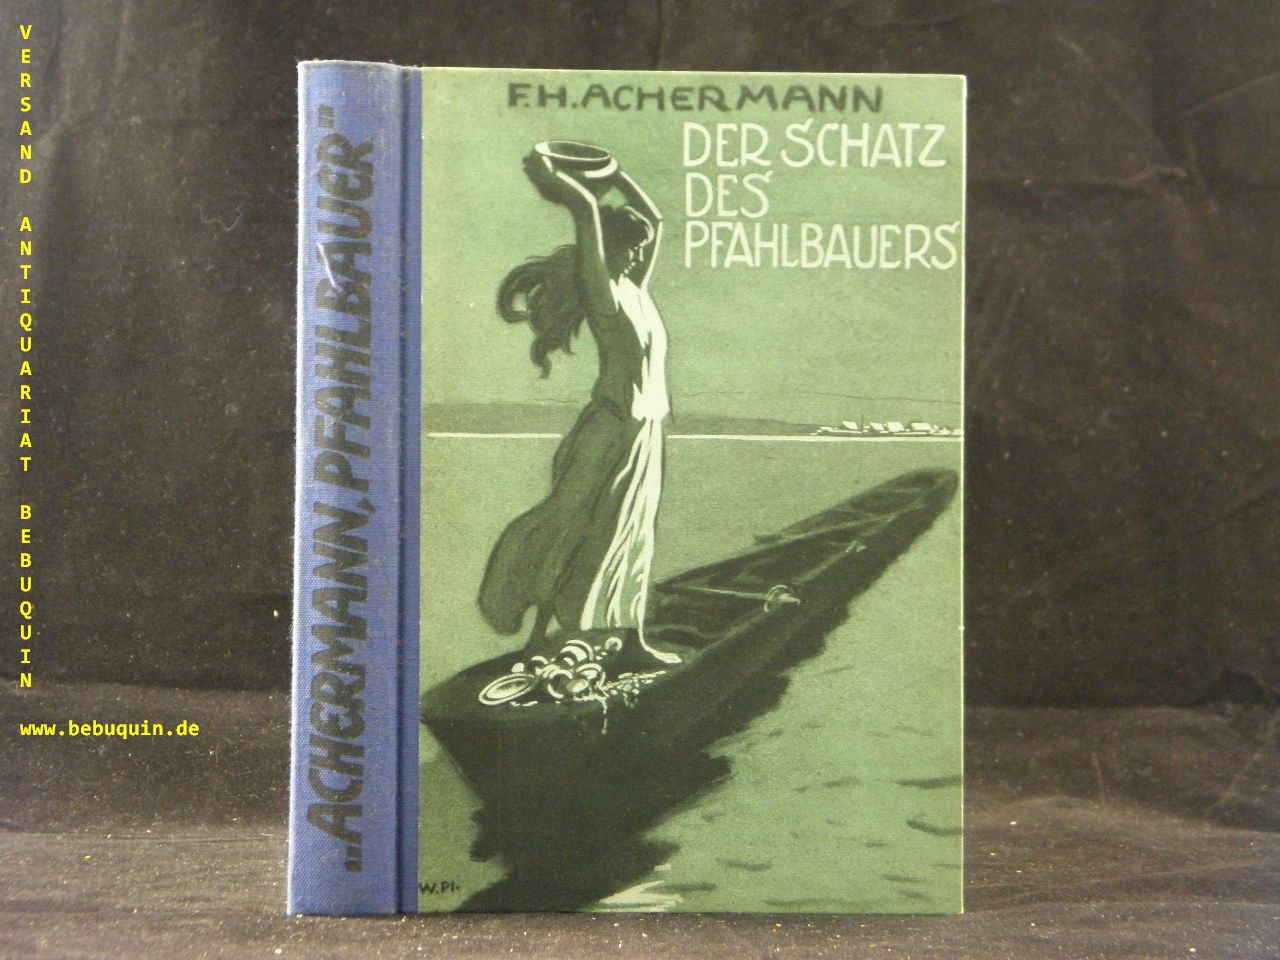 ACHERMANN, F.H.: - Der Schatz des Pfahlbauers.  Roman aus den Wildnissen der Bronzezeit.